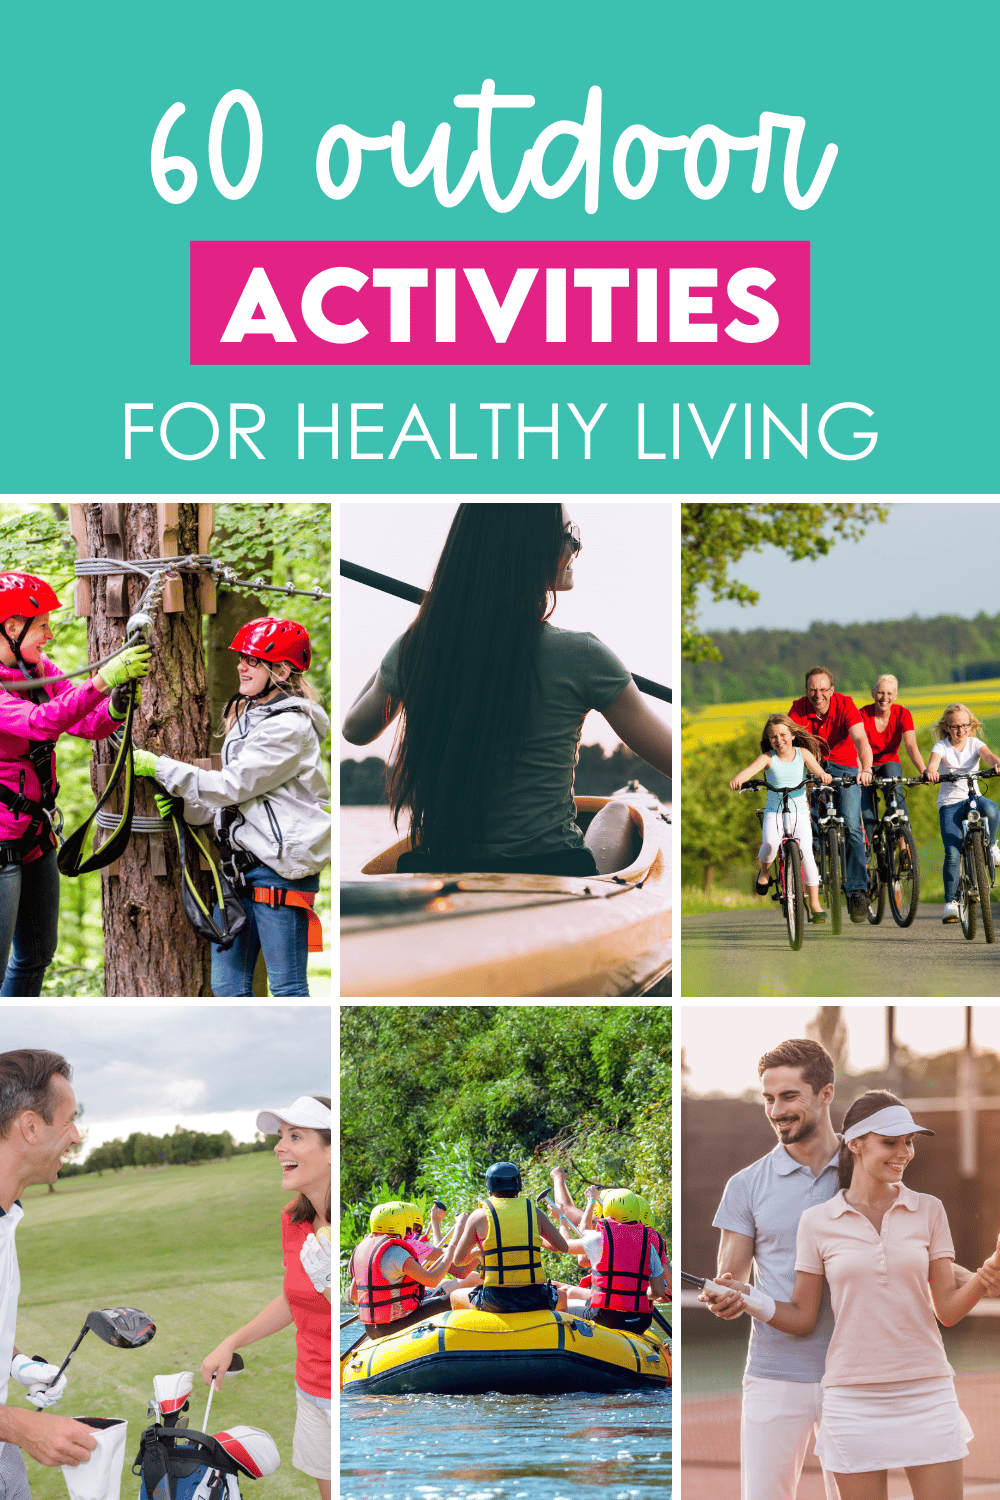 60 Outdoor Activities For Healthy Living 